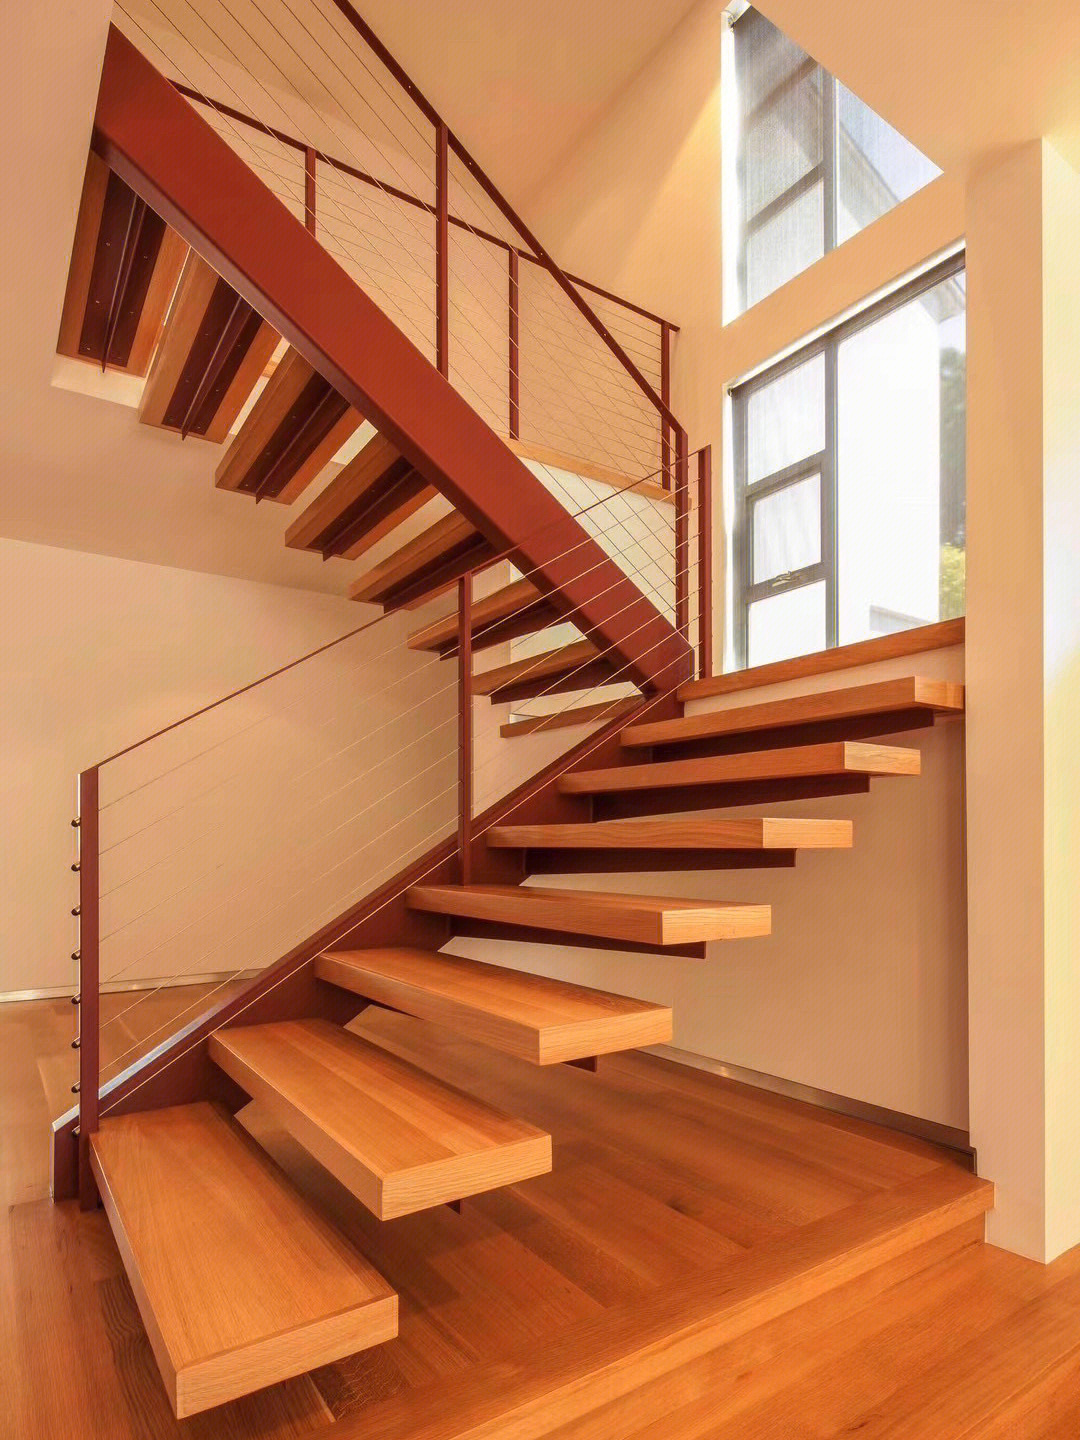 普通楼梯概念图片